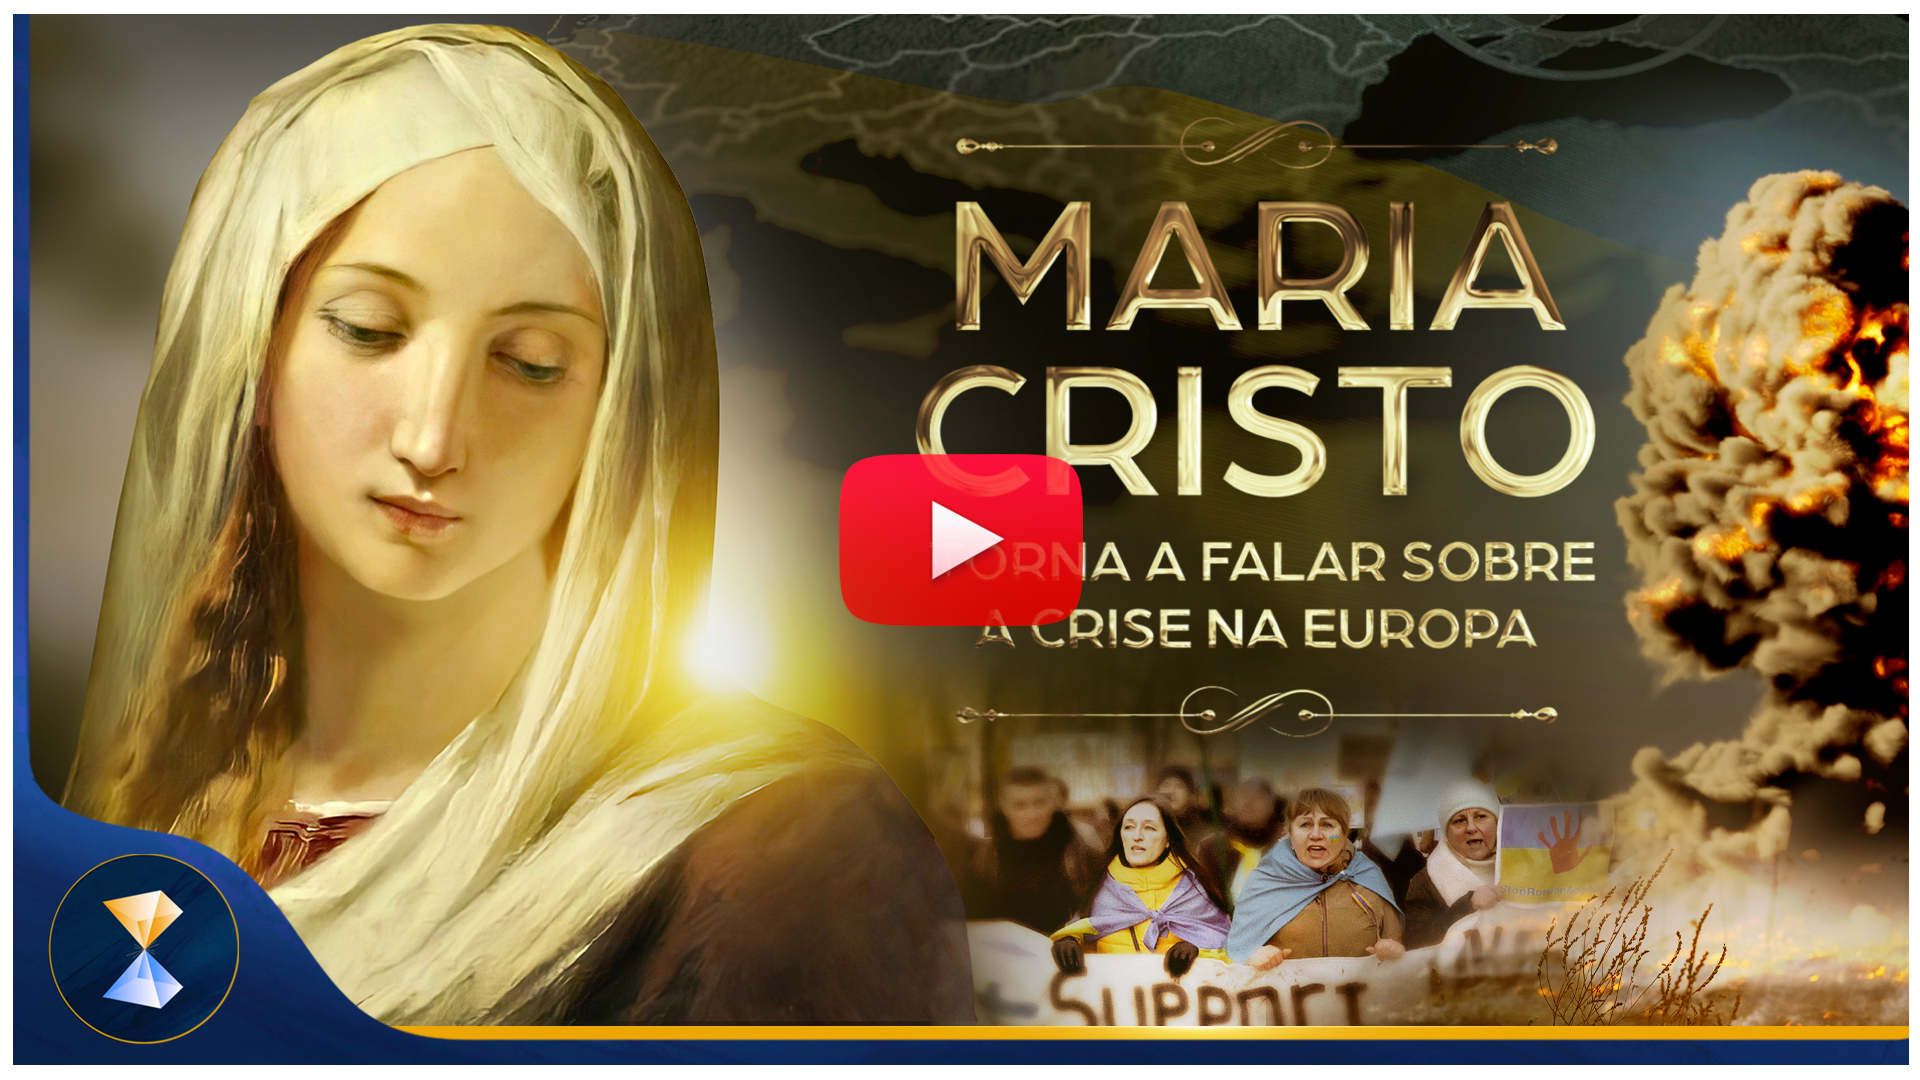 Maria Cristo torna a falar sobre a crise na Europa